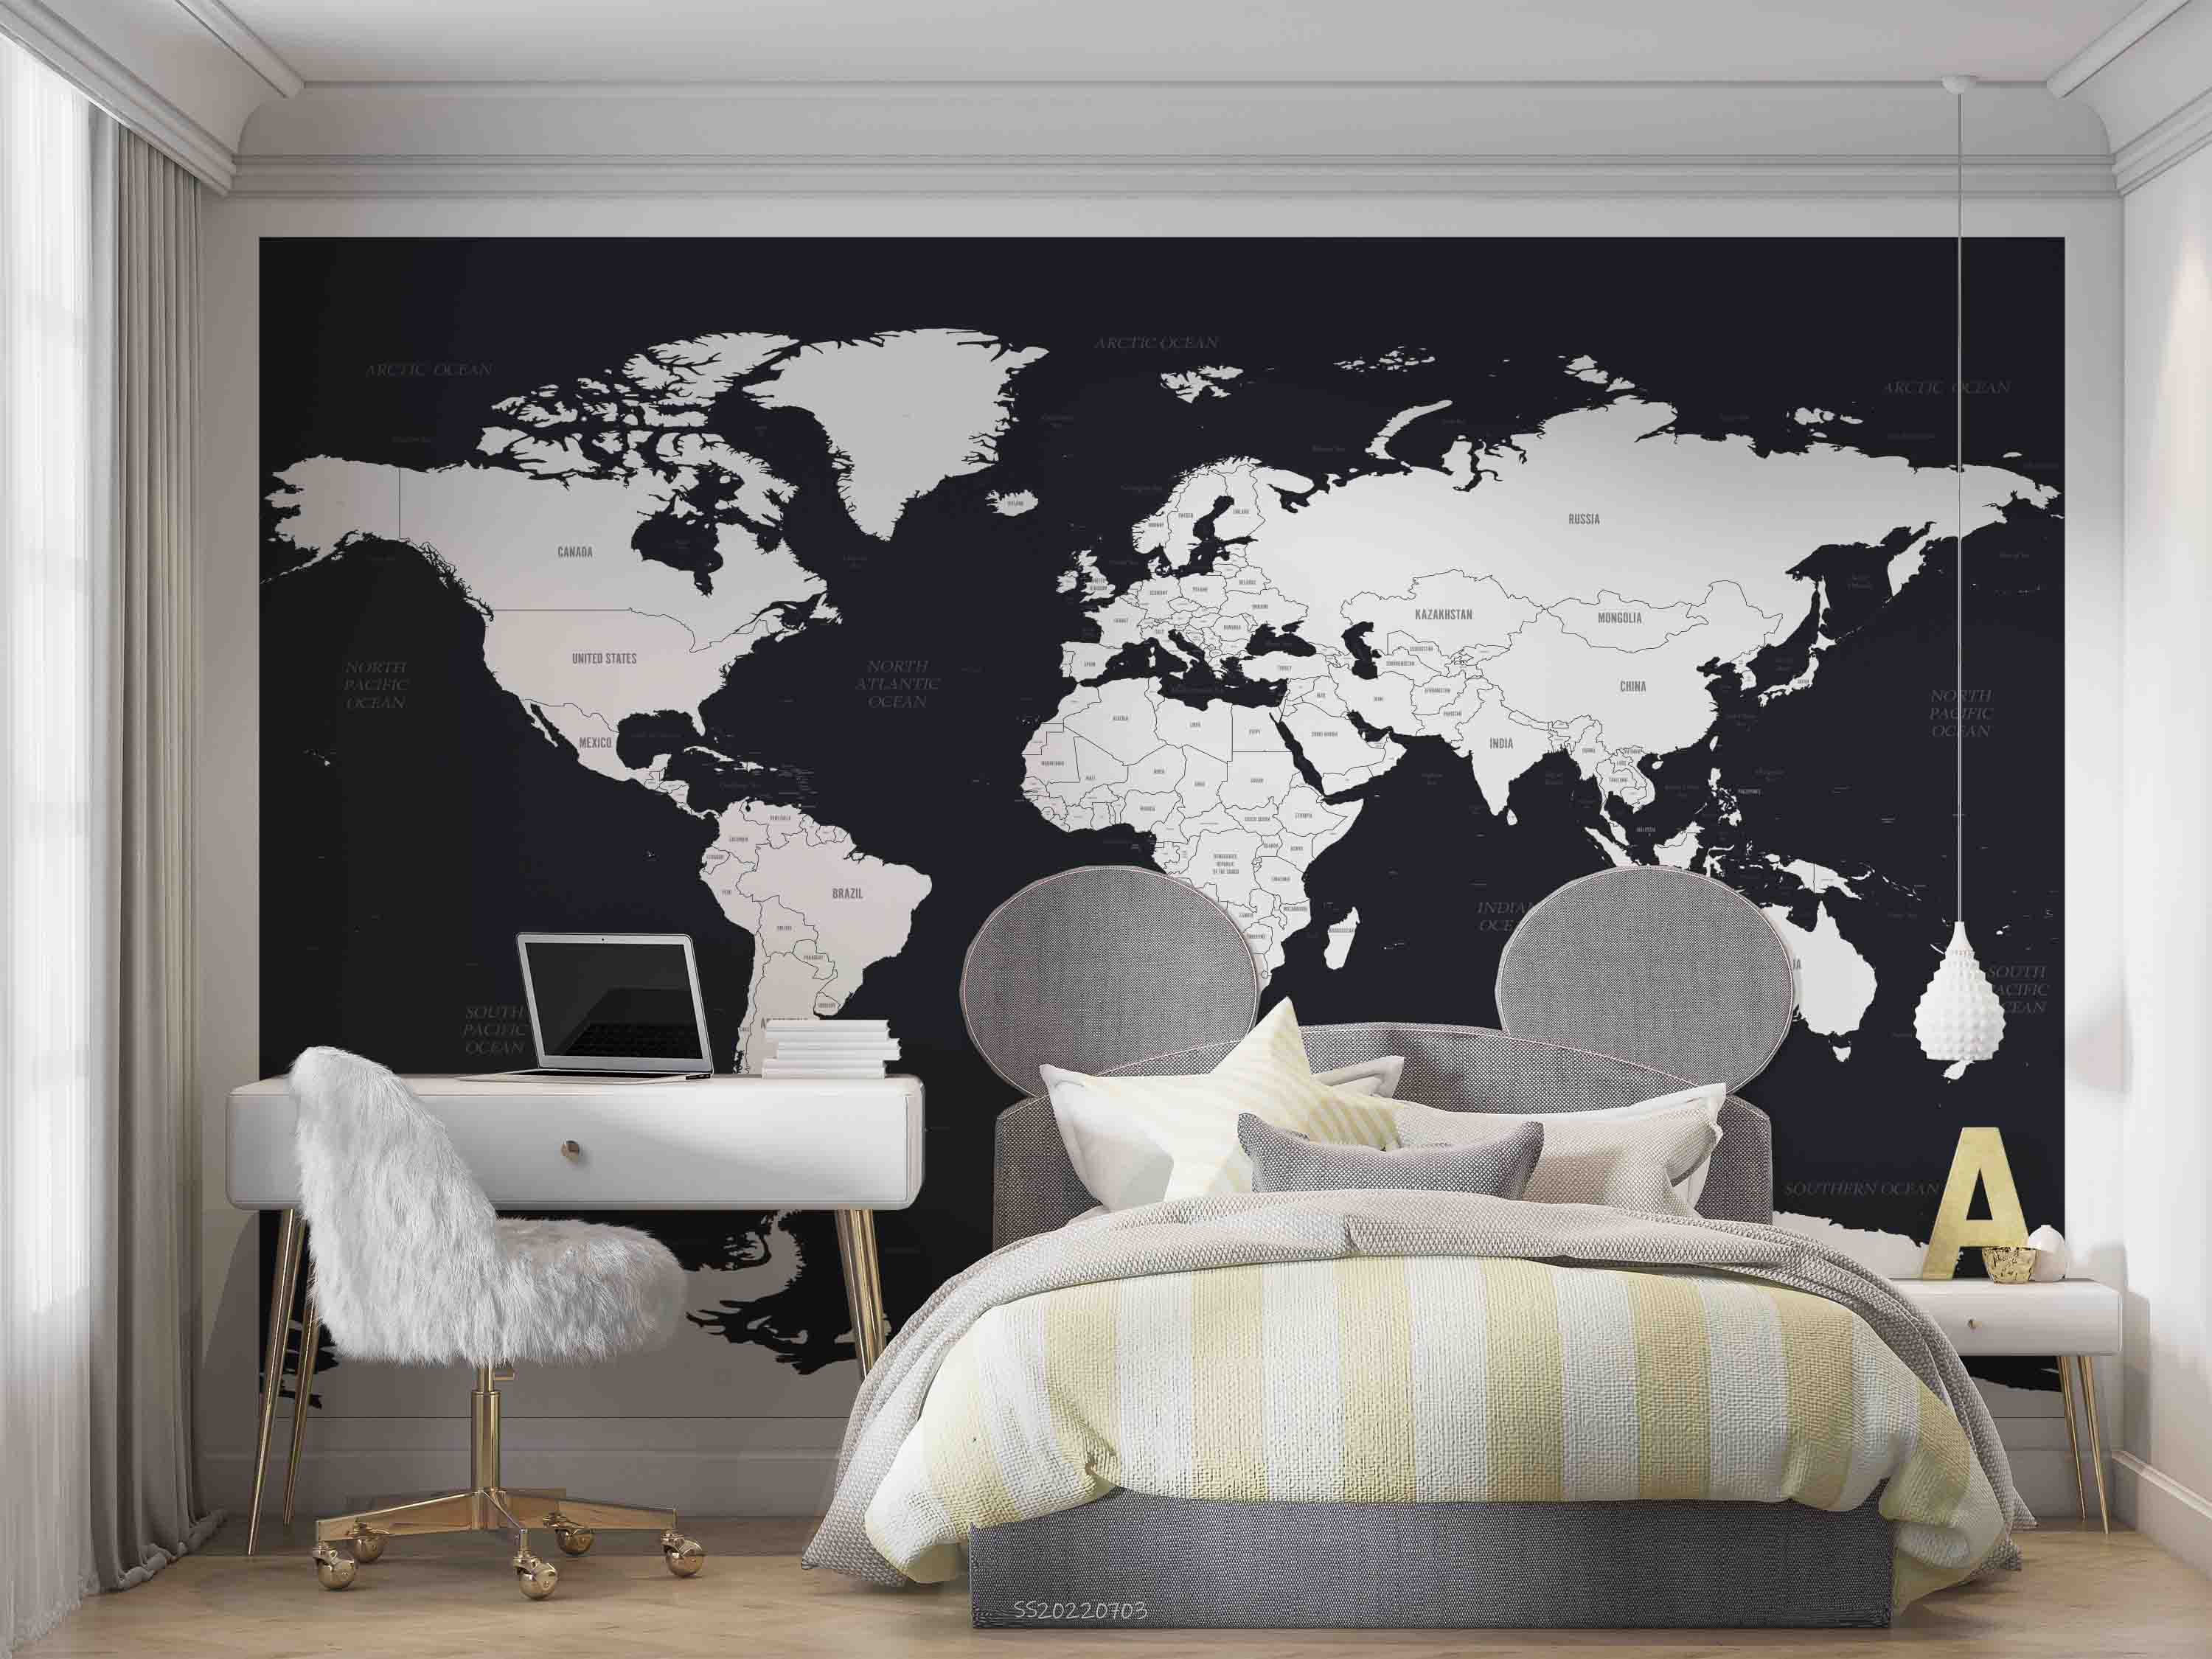 3D World Map Black White Wall Mural Wallpaper GD 1096- Jess Art Decoration